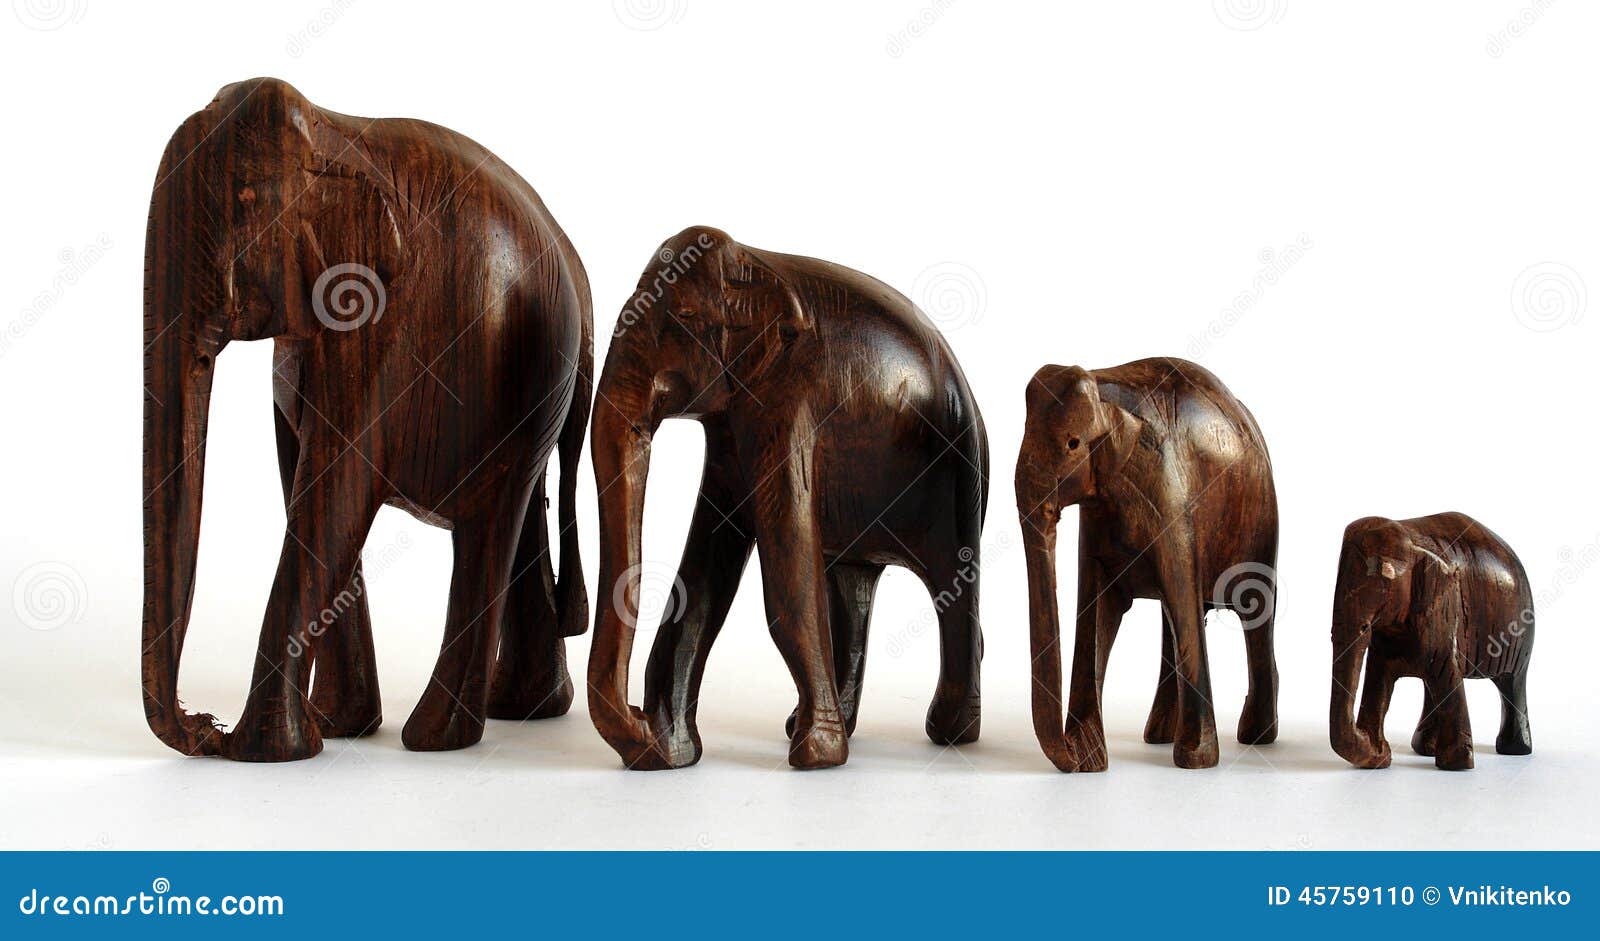 红木工艺品 越南红木工艺品 吉祥如意 红木雕刻大象 母子象摆件_越南美食工艺商城